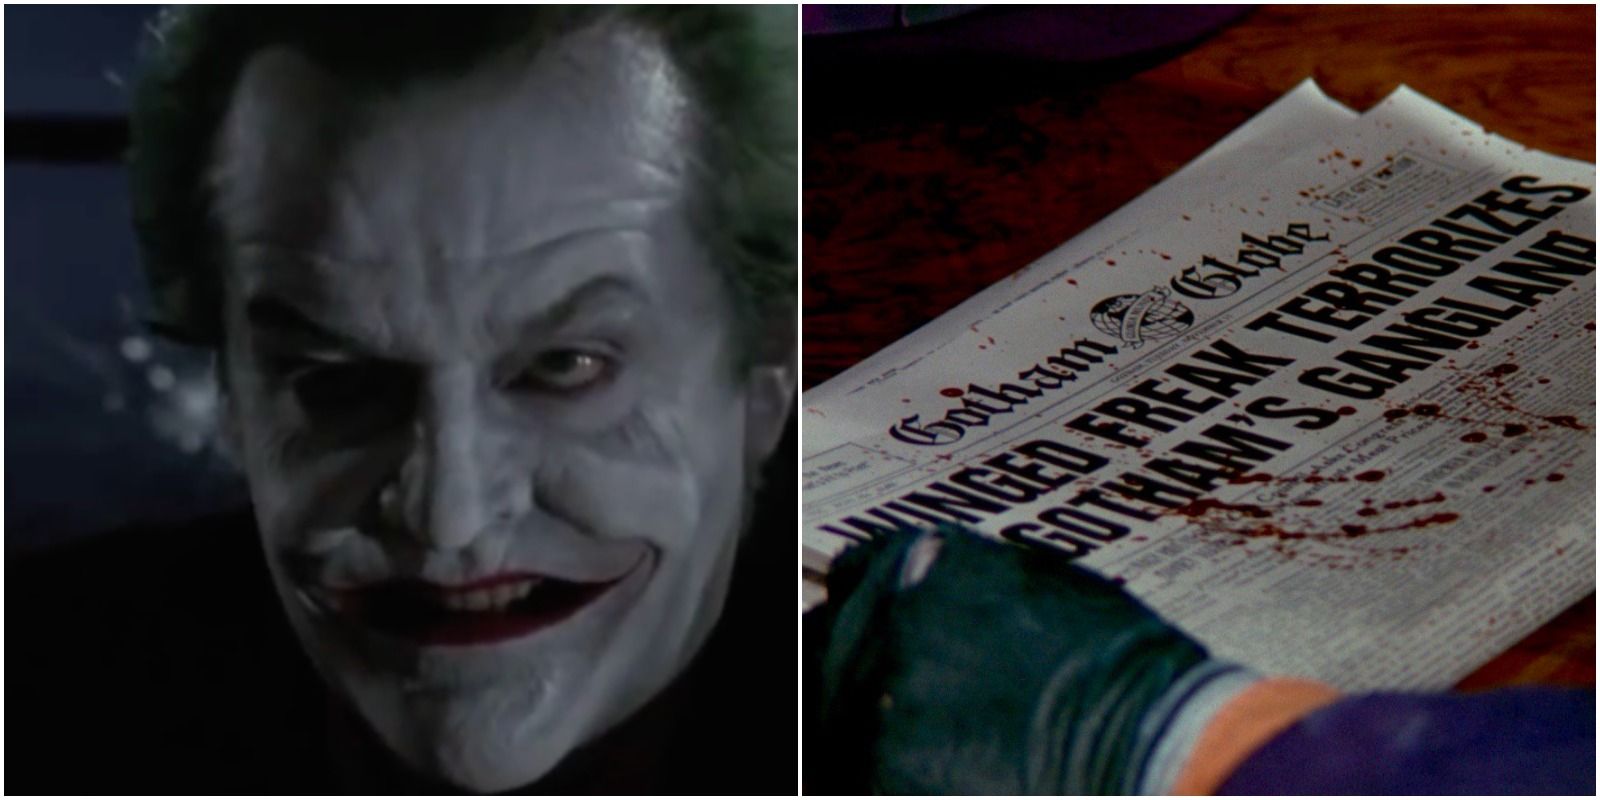 Jack Nicholson as Joker in the 1989 film